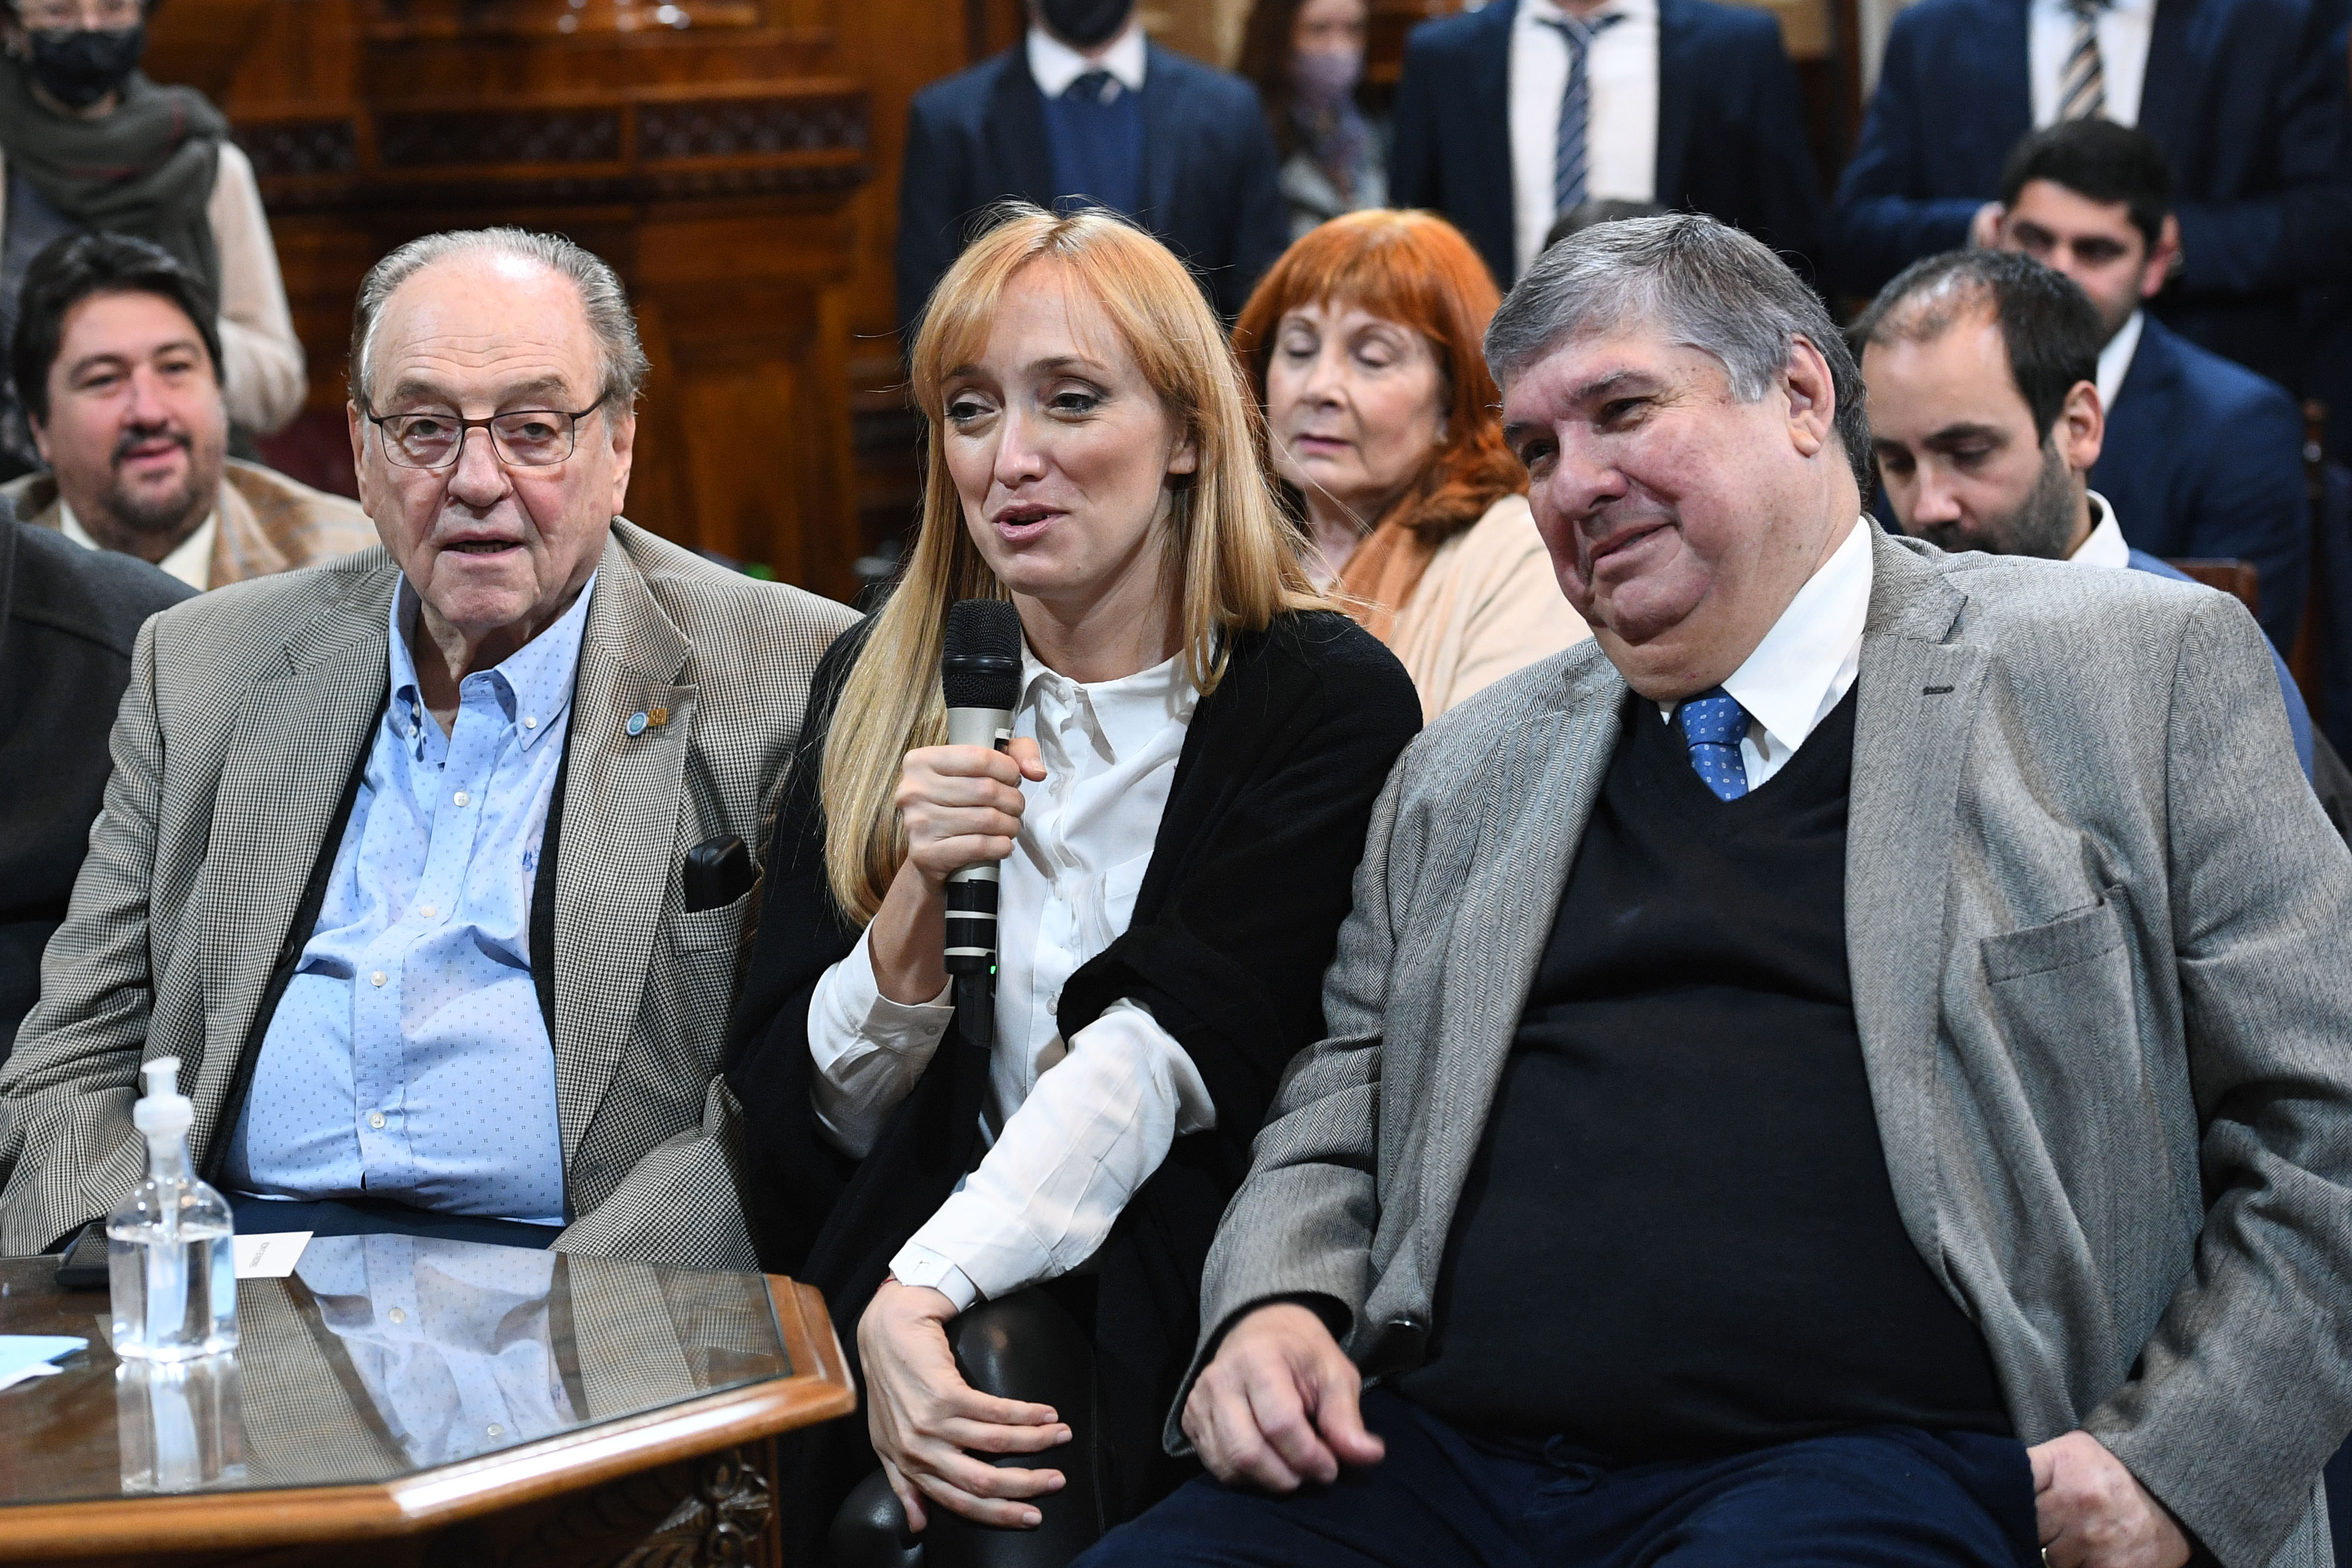 The senators who respond to Cristina Kirchner